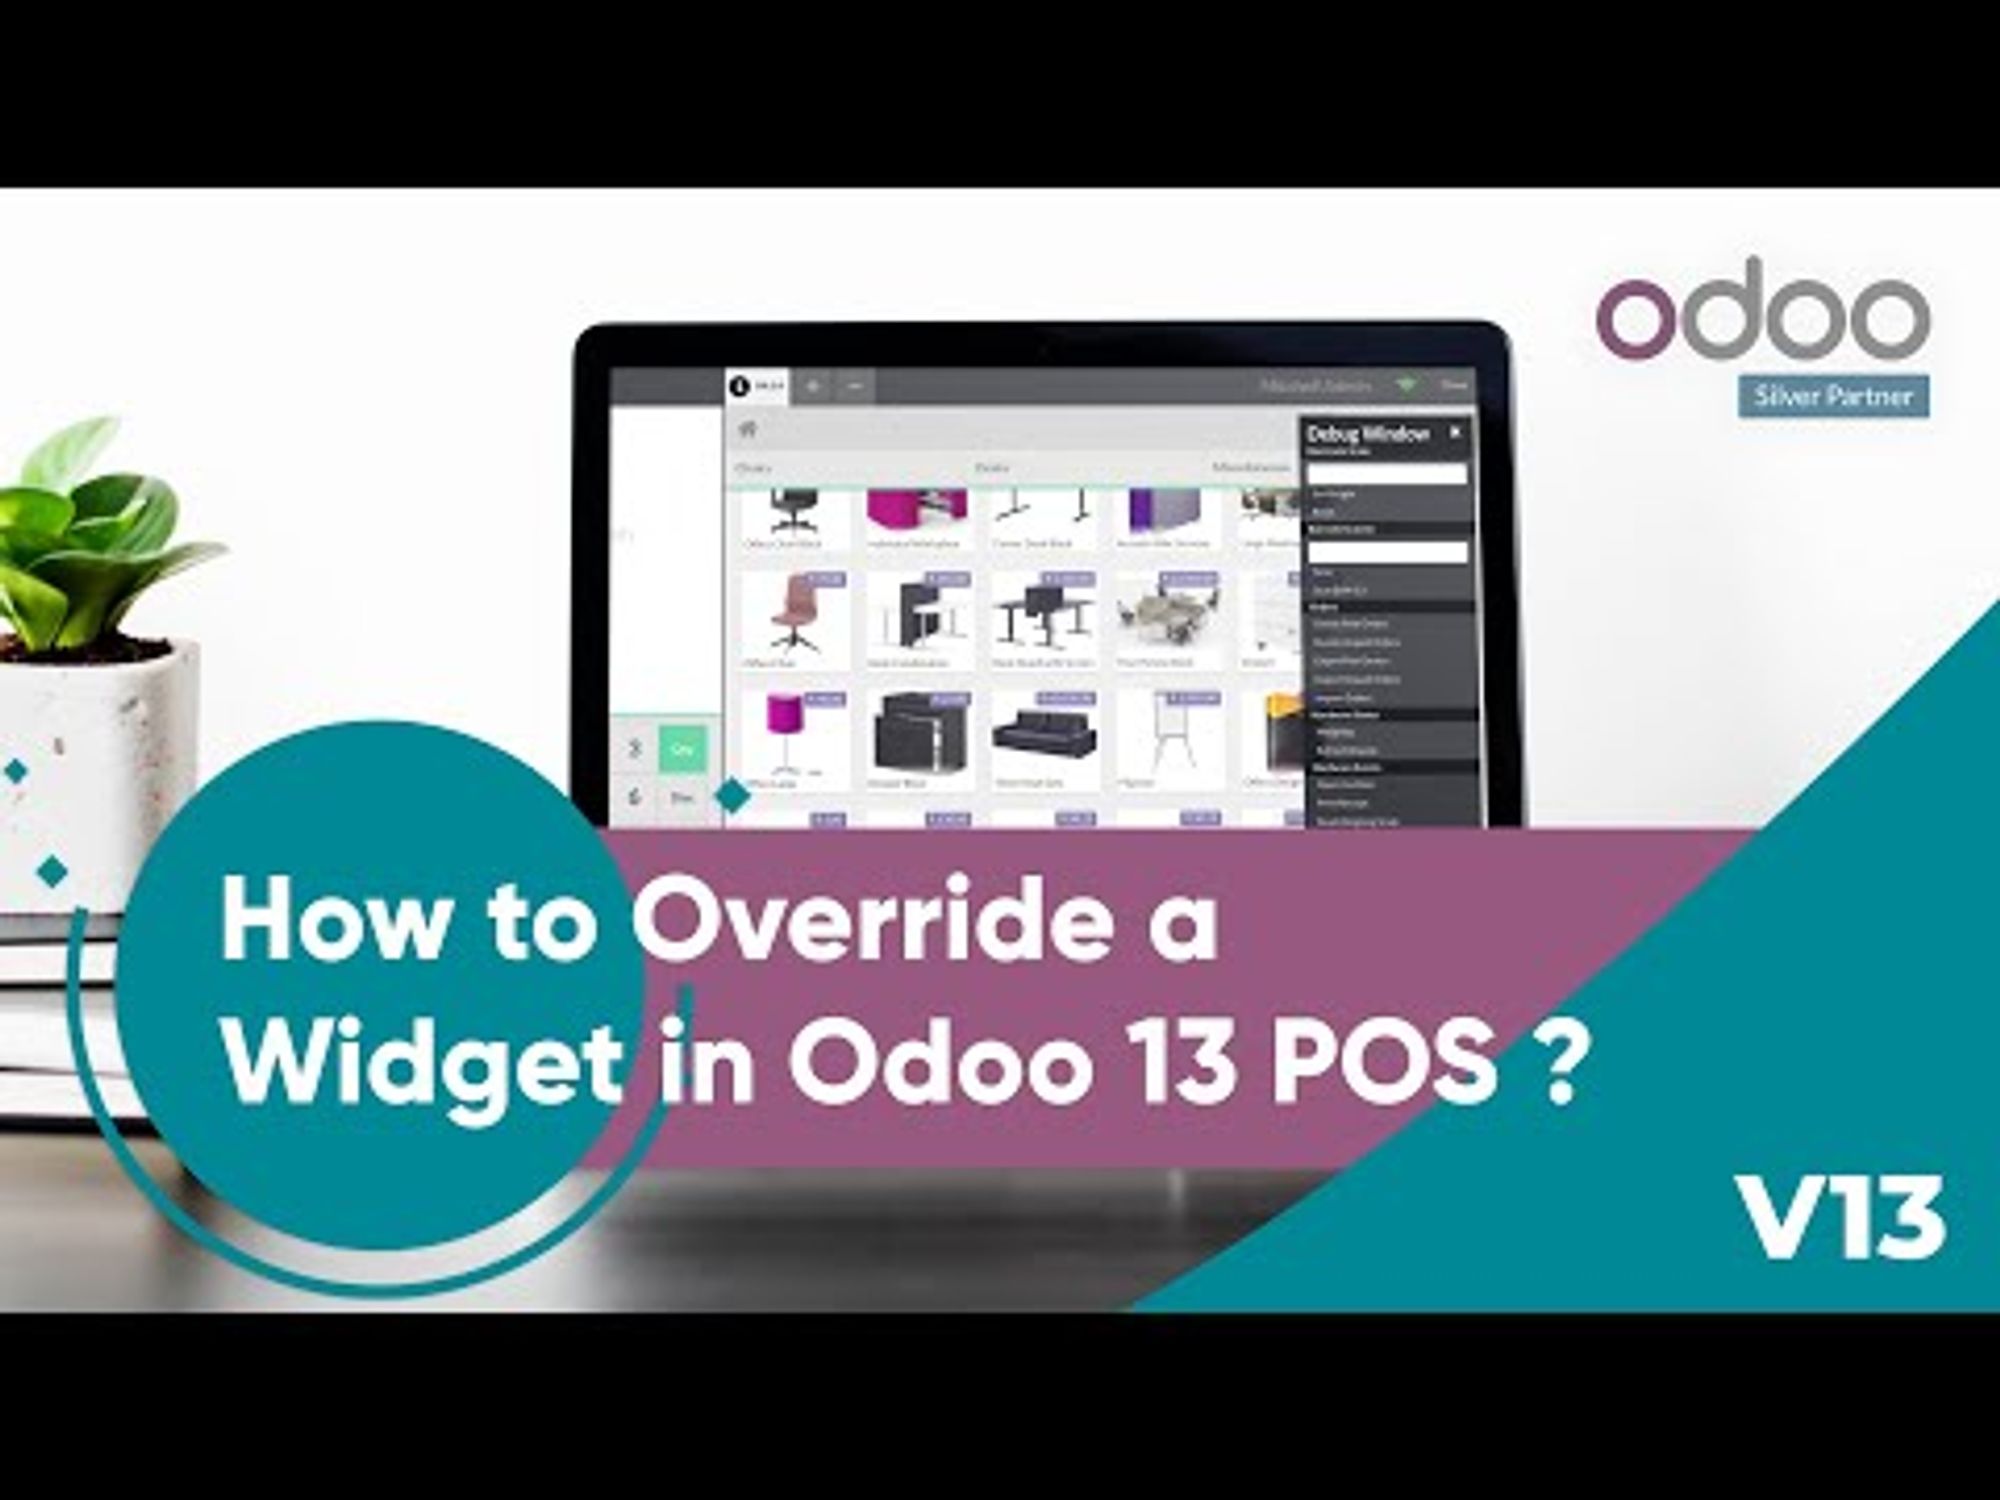 How to Override a Widget in Odoo 13 POS?